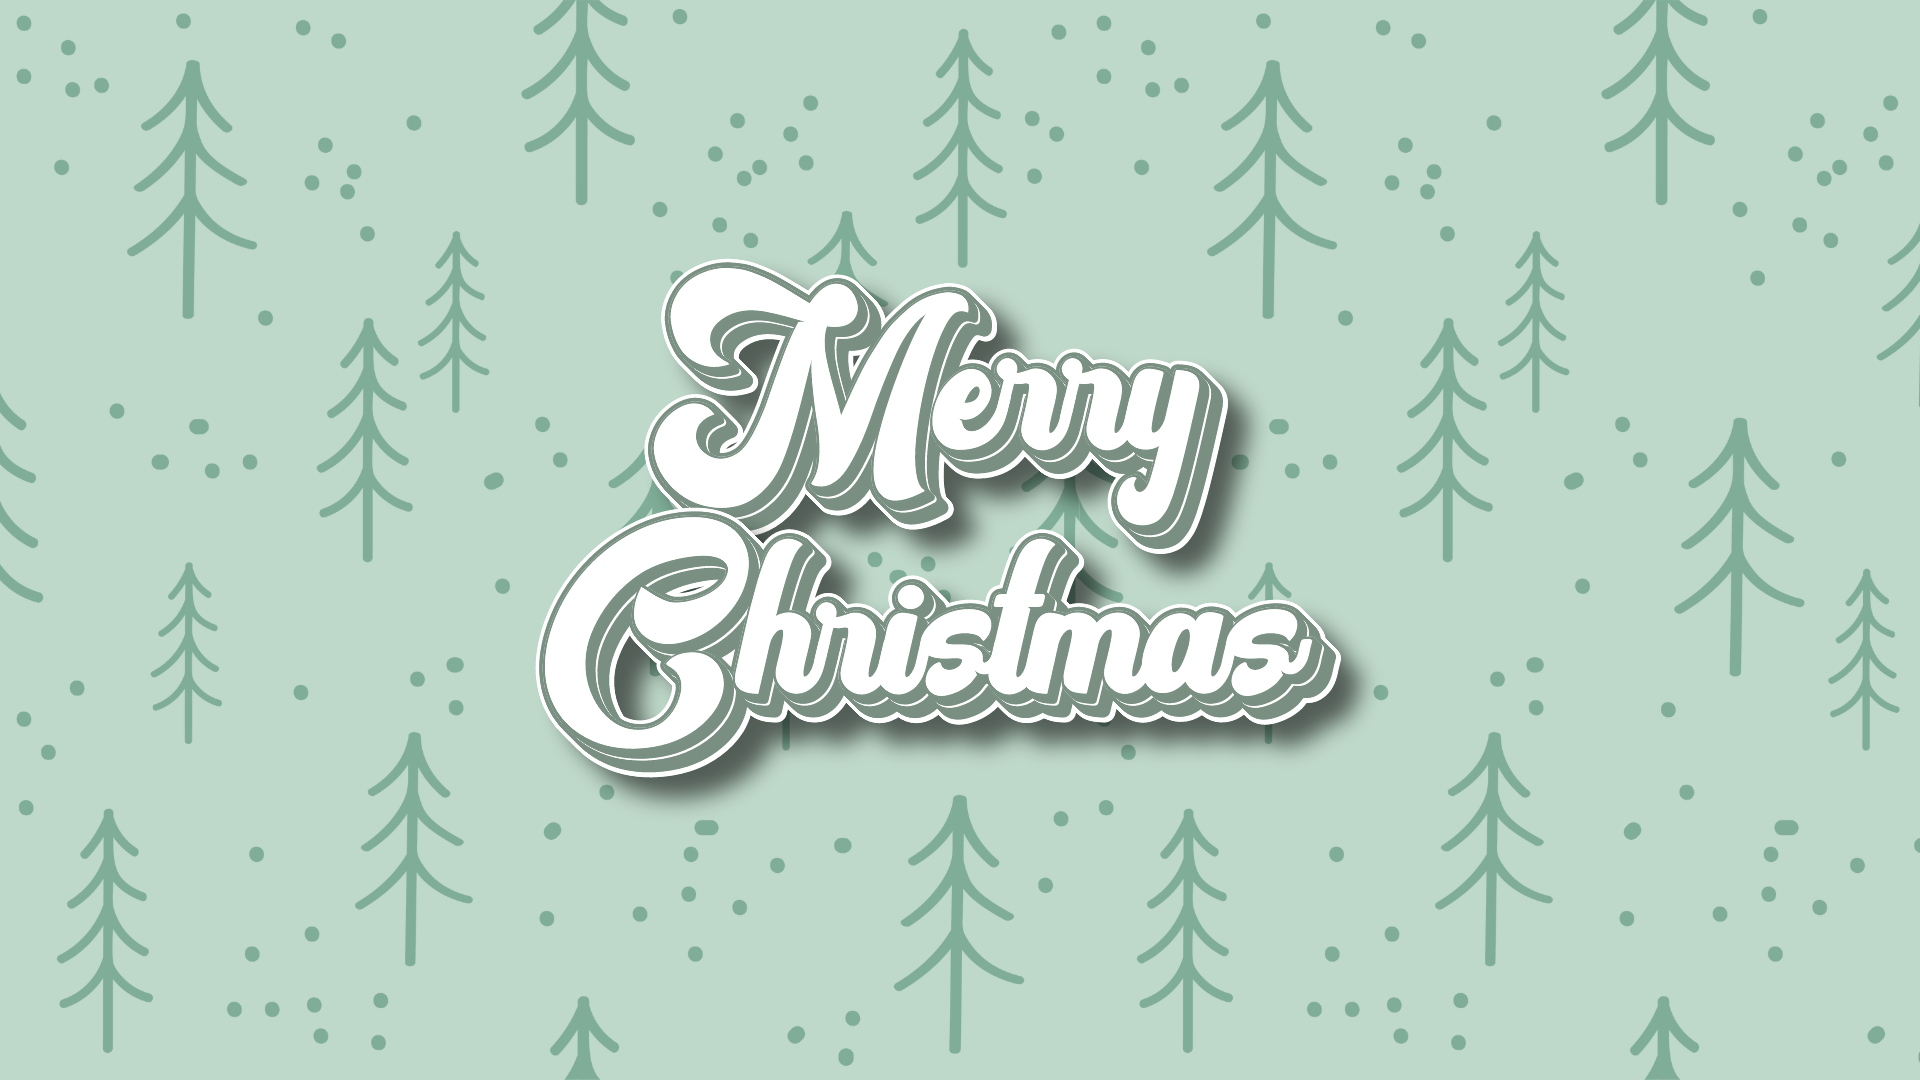 Pastel Christmas Images  Free Download on Freepik